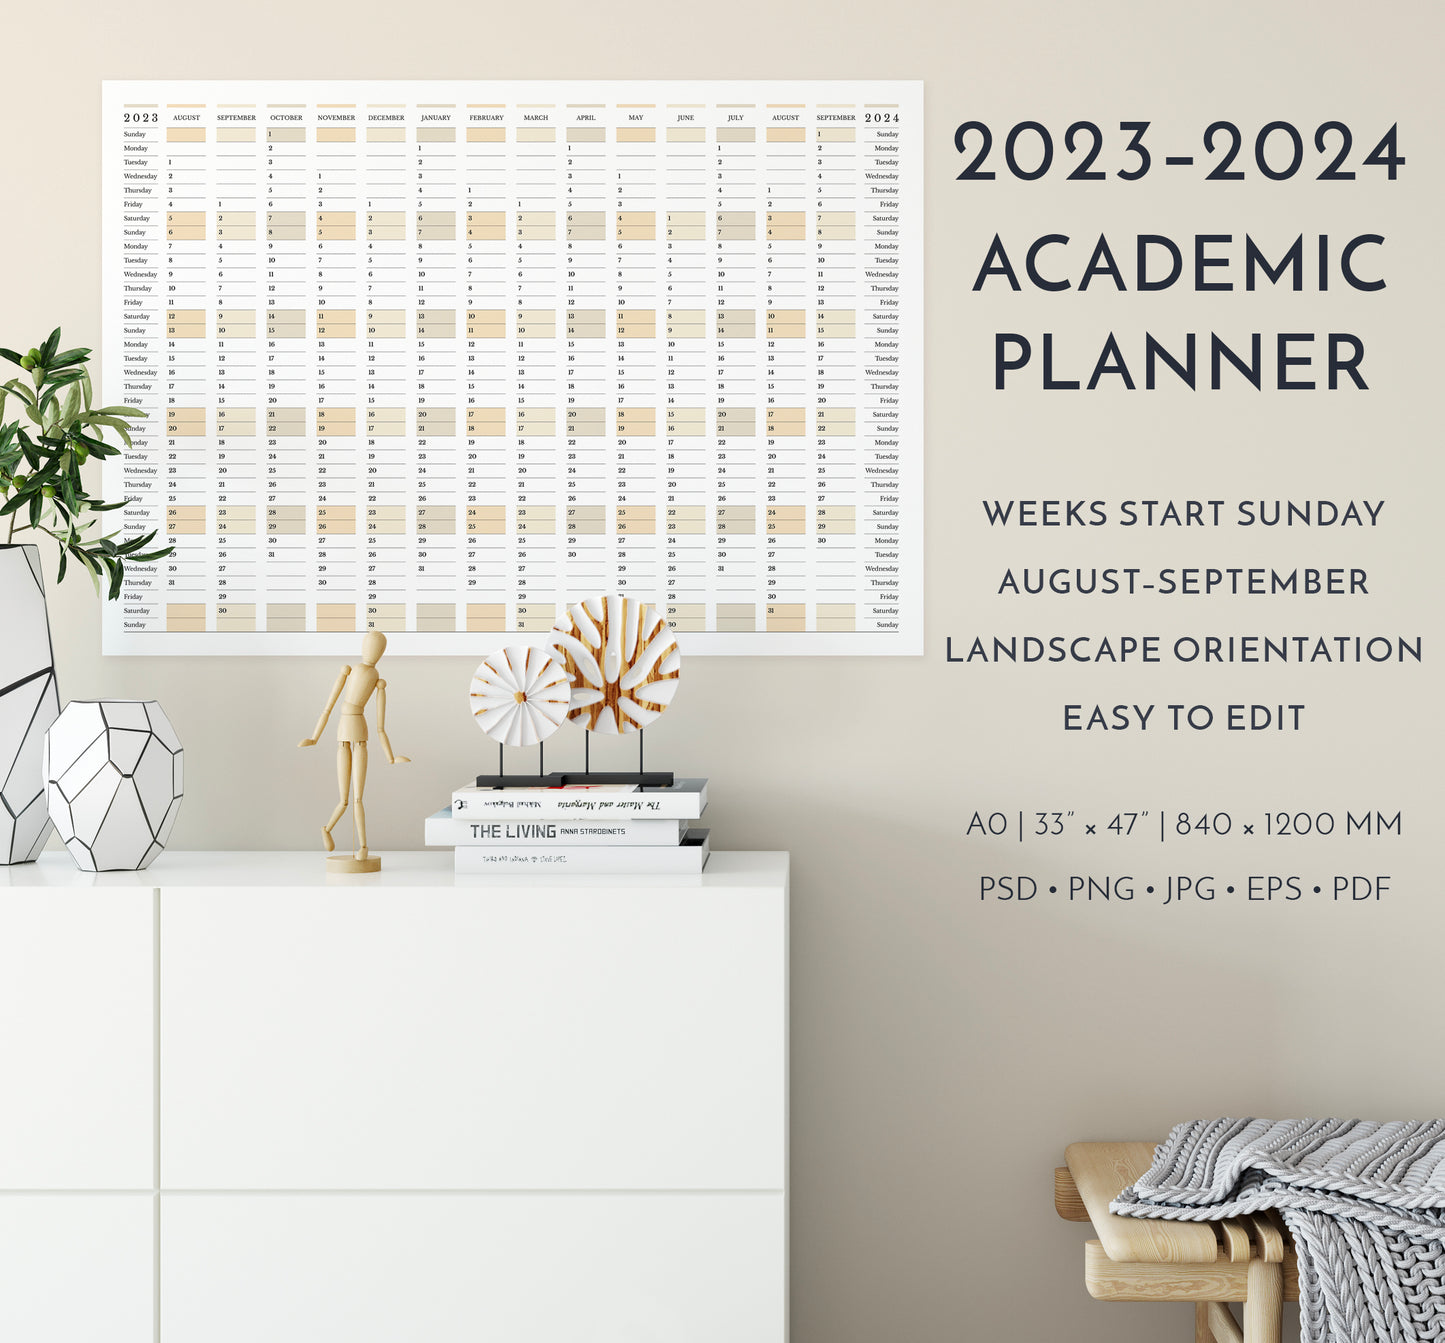 2023-2024 Academic Planner, weeks start Sunday, in landscape orientation, in interior